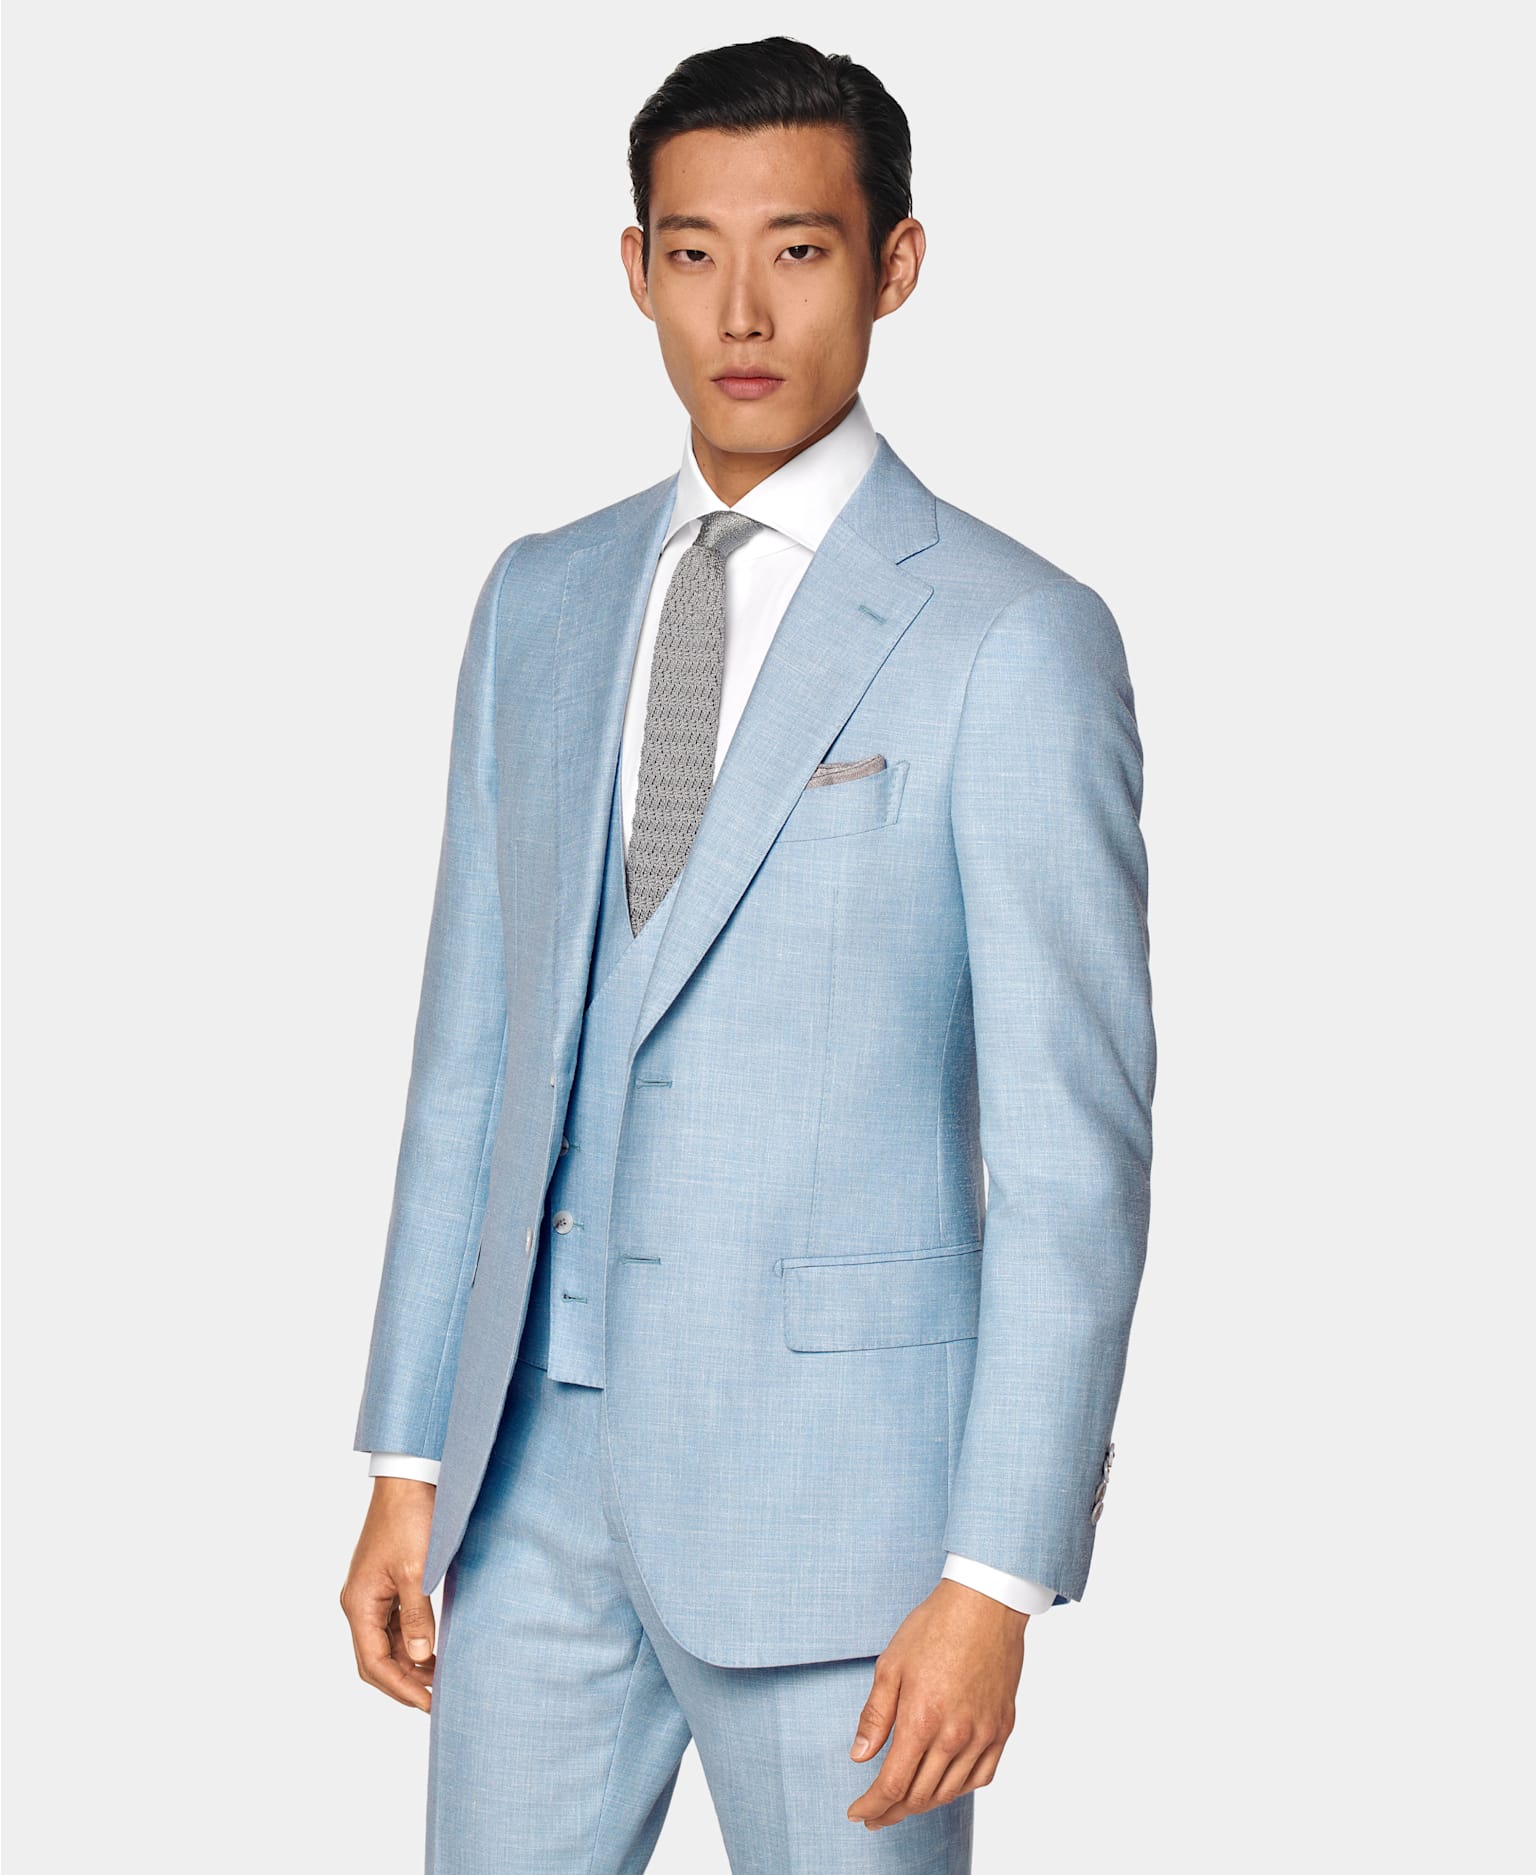 Traje azul claro de 3 piezas con camisa blanca y corbata de punto gris de seda.